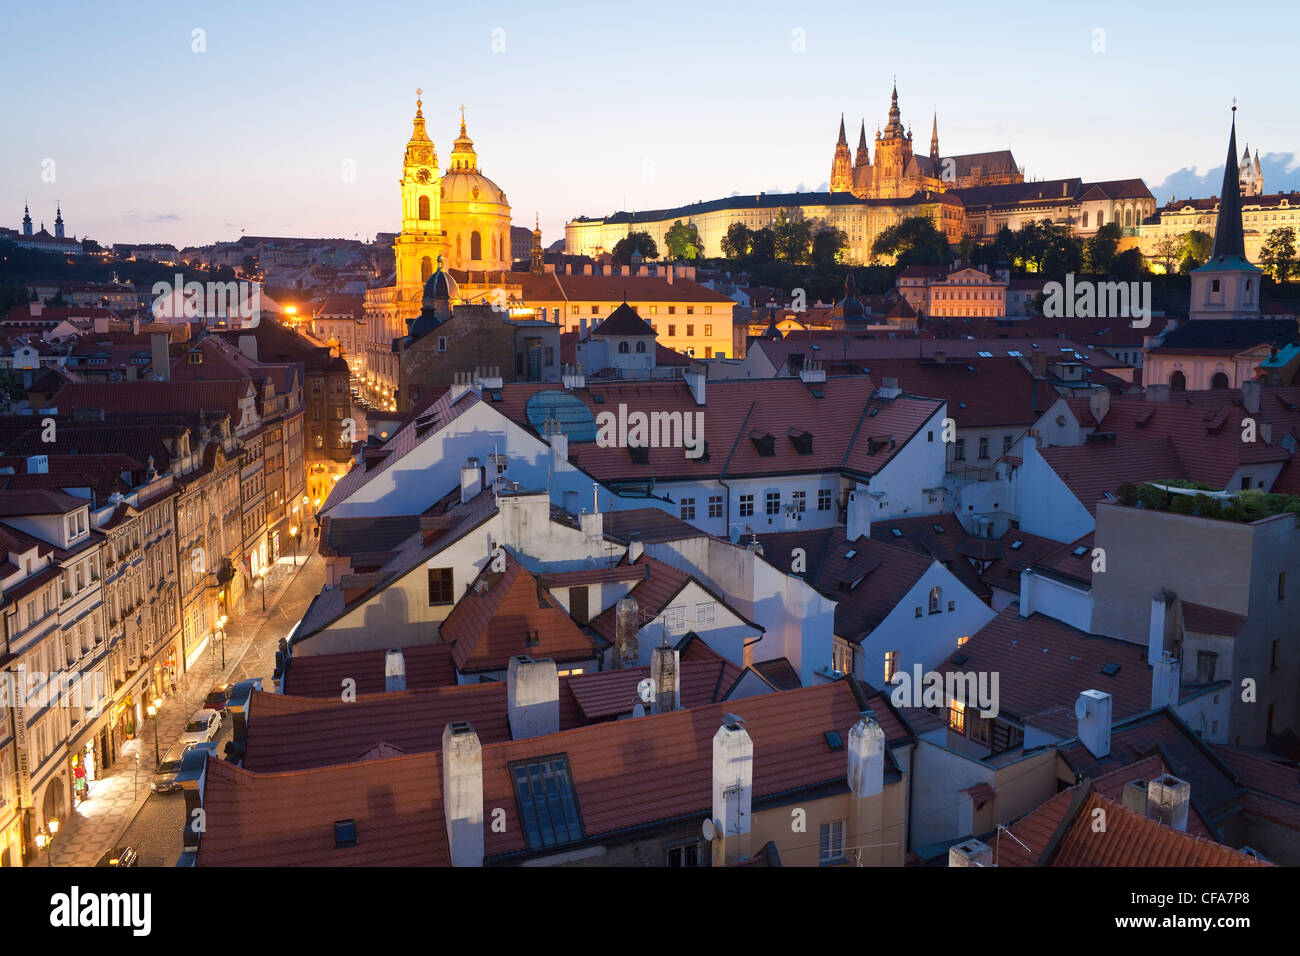 La Cathédrale Saint-Guy et le quartier du château au crépuscule, Prague, République Tchèque Banque D'Images